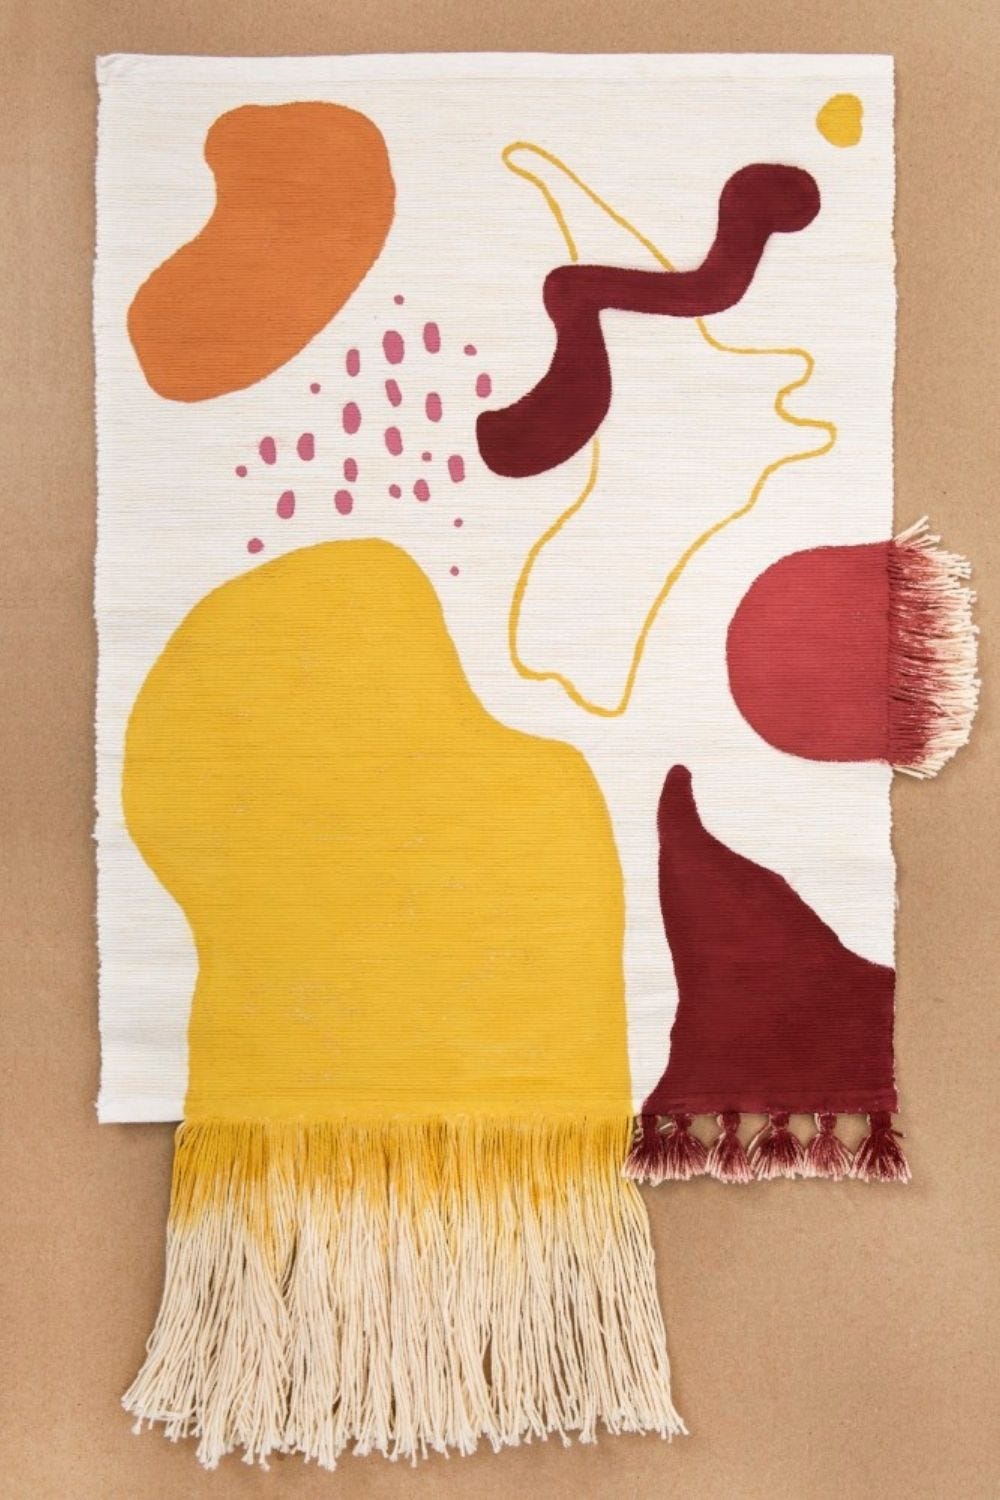 A piece of textile as decor- Fall decor ideas 2020